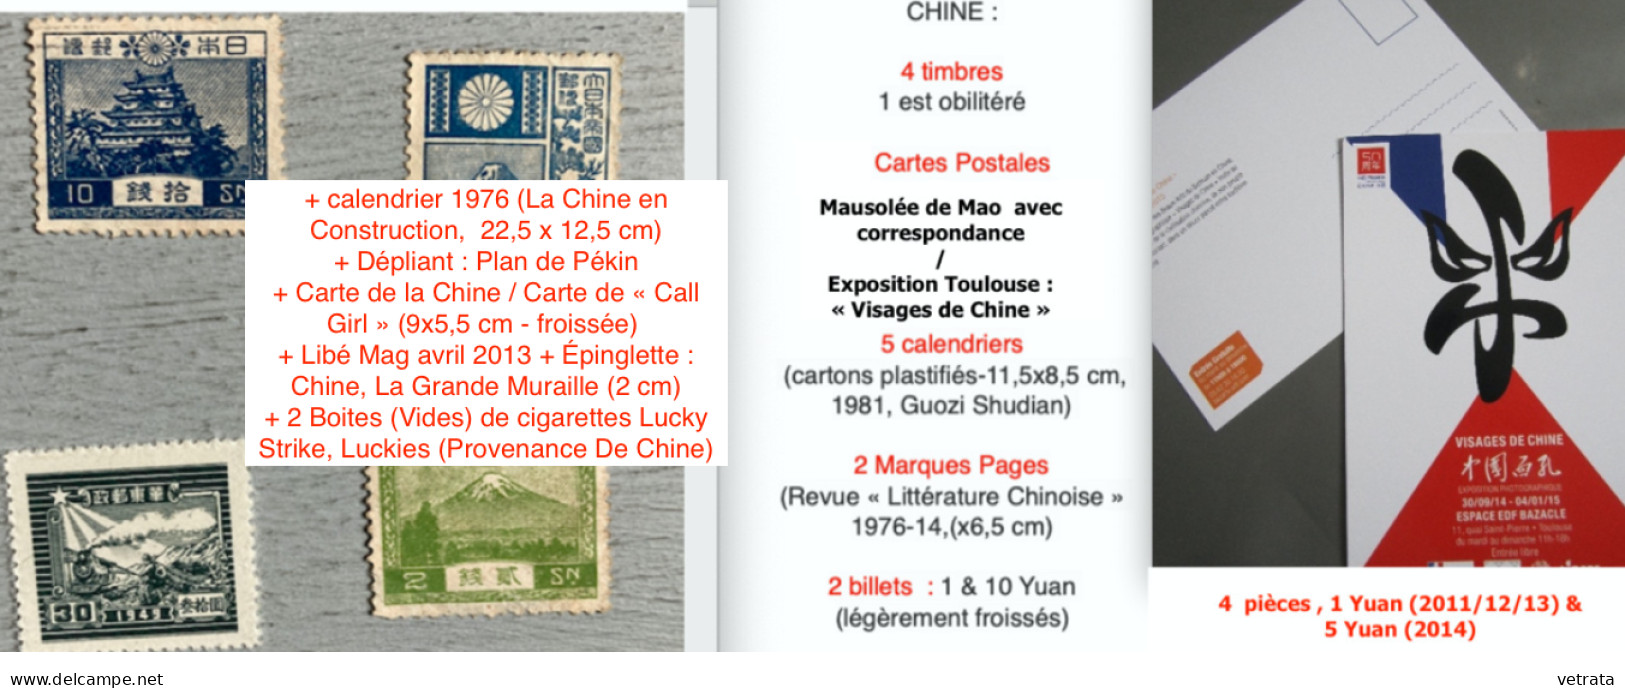 CHINE : 1 Album, 1 Guide & 1 Revue. CHINE (Larousse-Monde & Voyages-1988) / Guide Hachette Visa : À Pékin & En Chine, 19 - Paquete De Libros